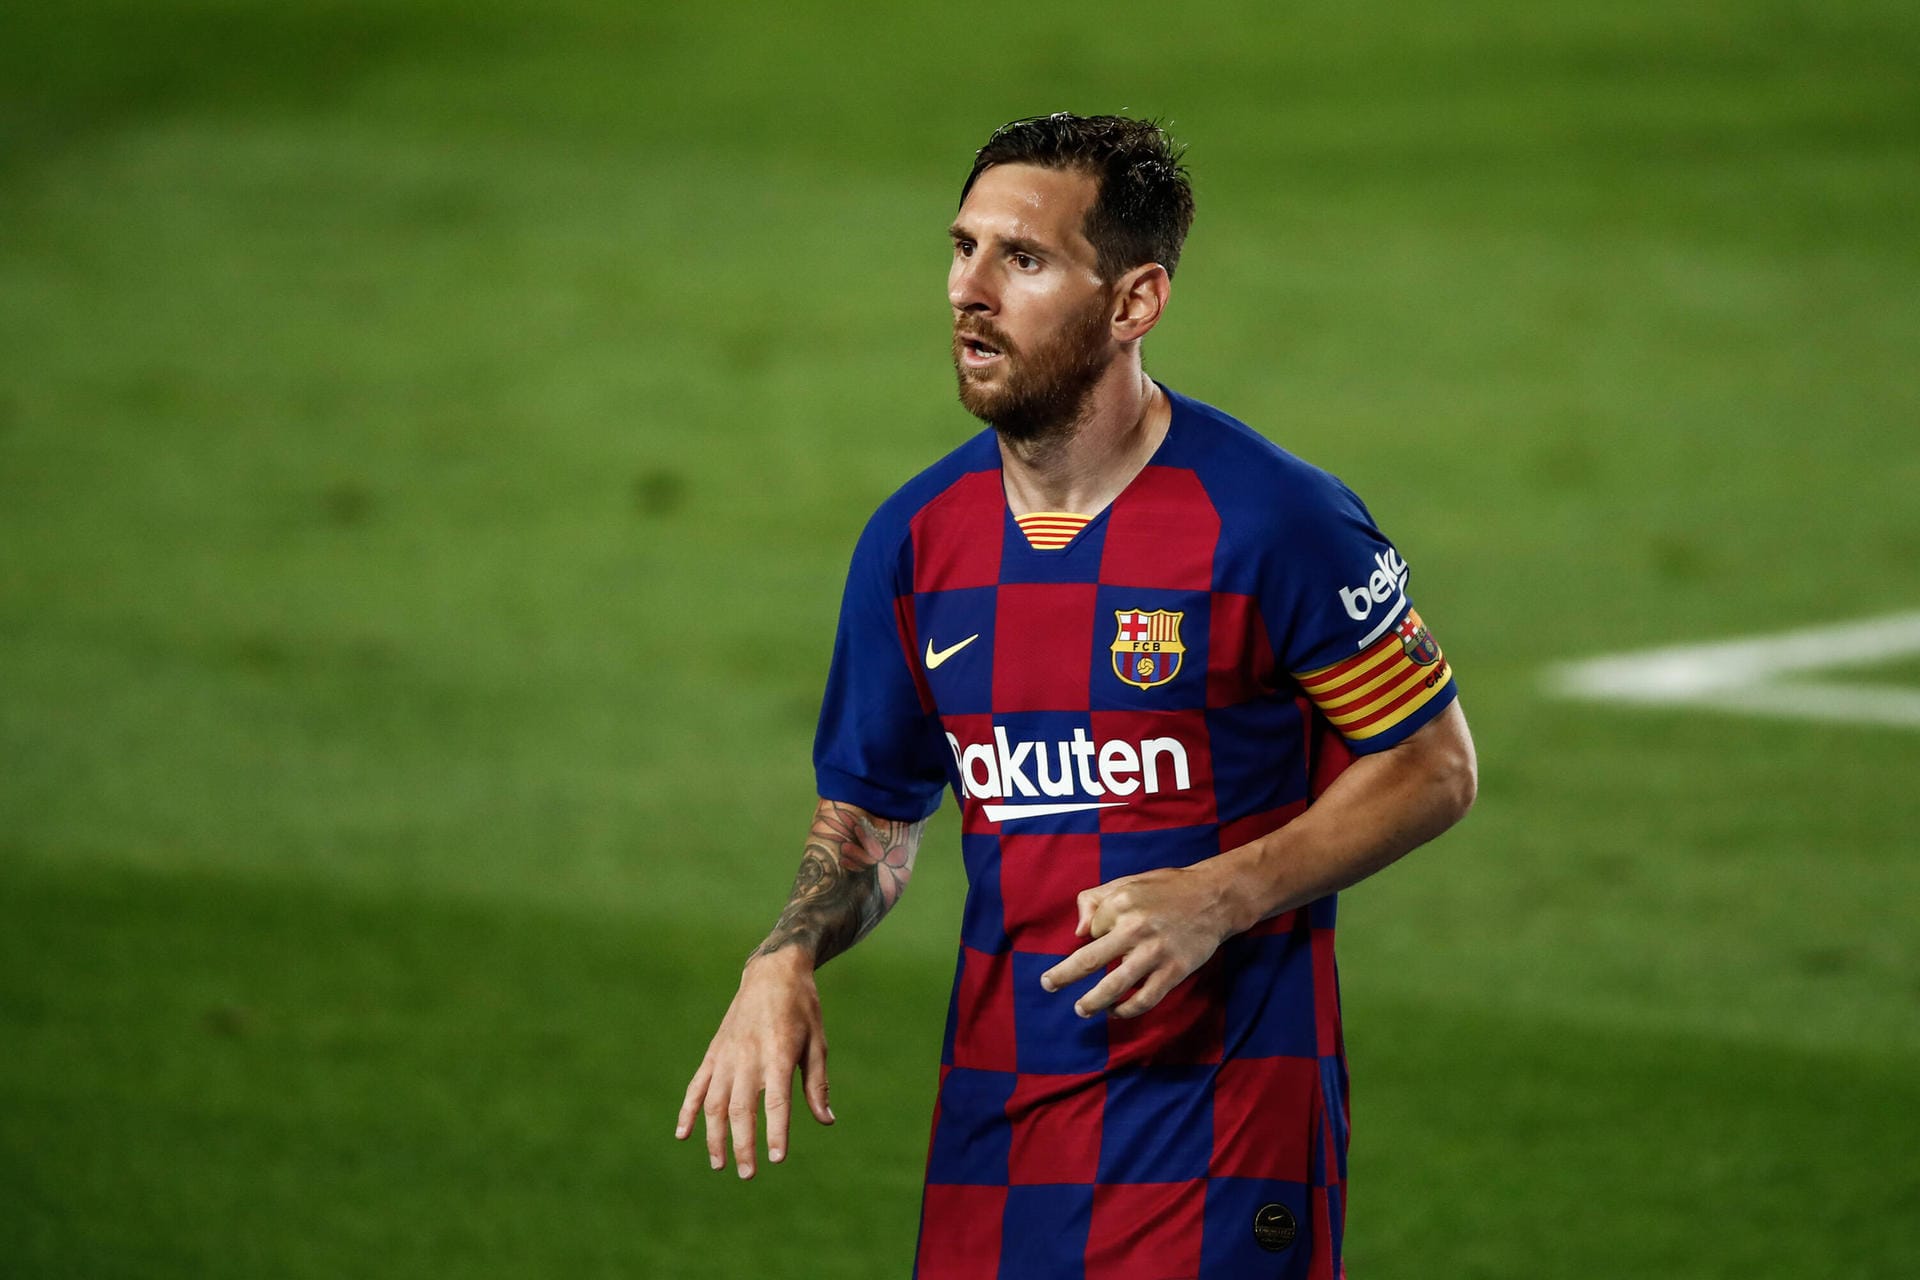 STURM: Lionel Messi ist ohne Frage das Herzstück Barças. Auch gegen Neapel zeigte er wieder, dass er für Außergewöhnliches zuständig ist in Katalonien. Wenn Bayern ihn nicht verteidigt bekommt, wird es schwer.